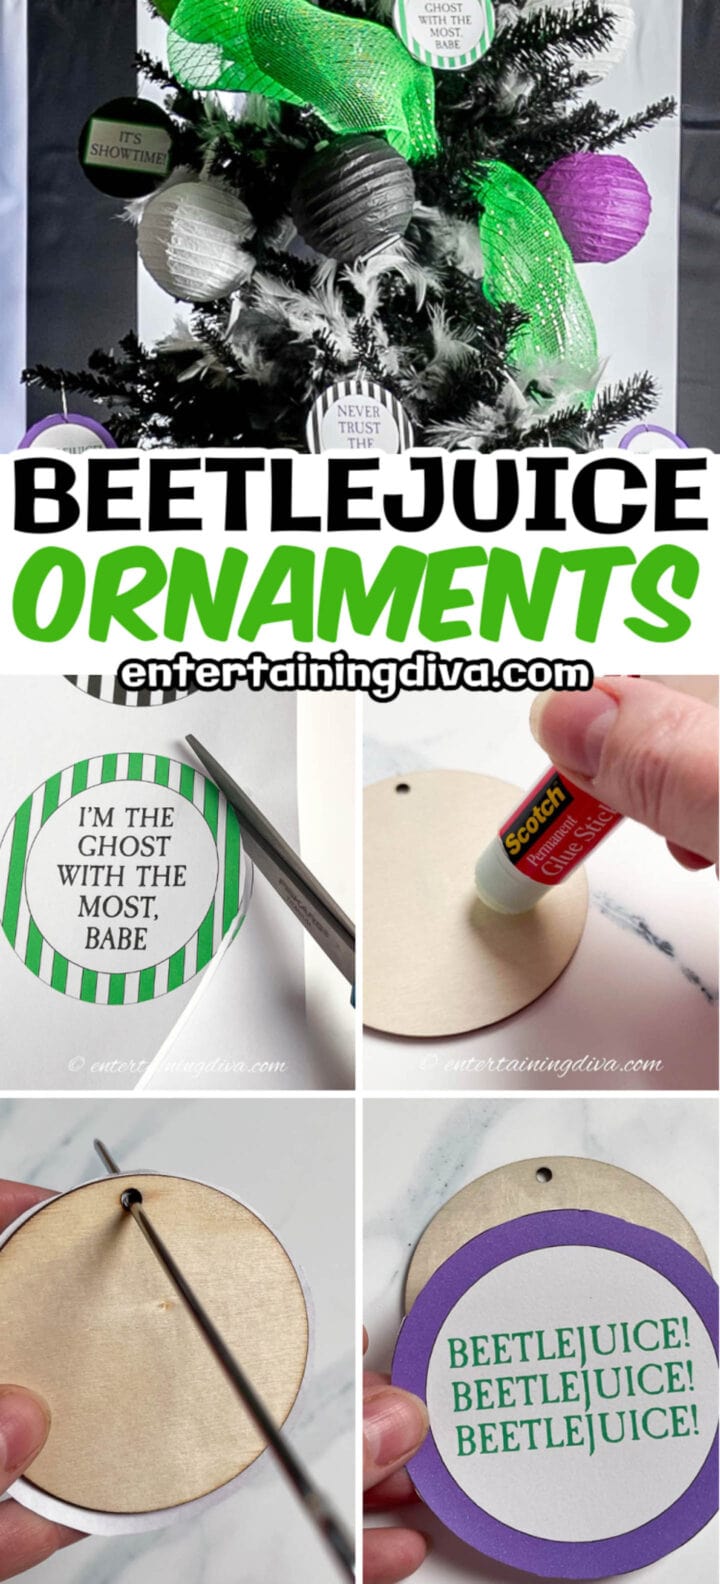 DIY Beetlejuice tree ornaments tutorial.